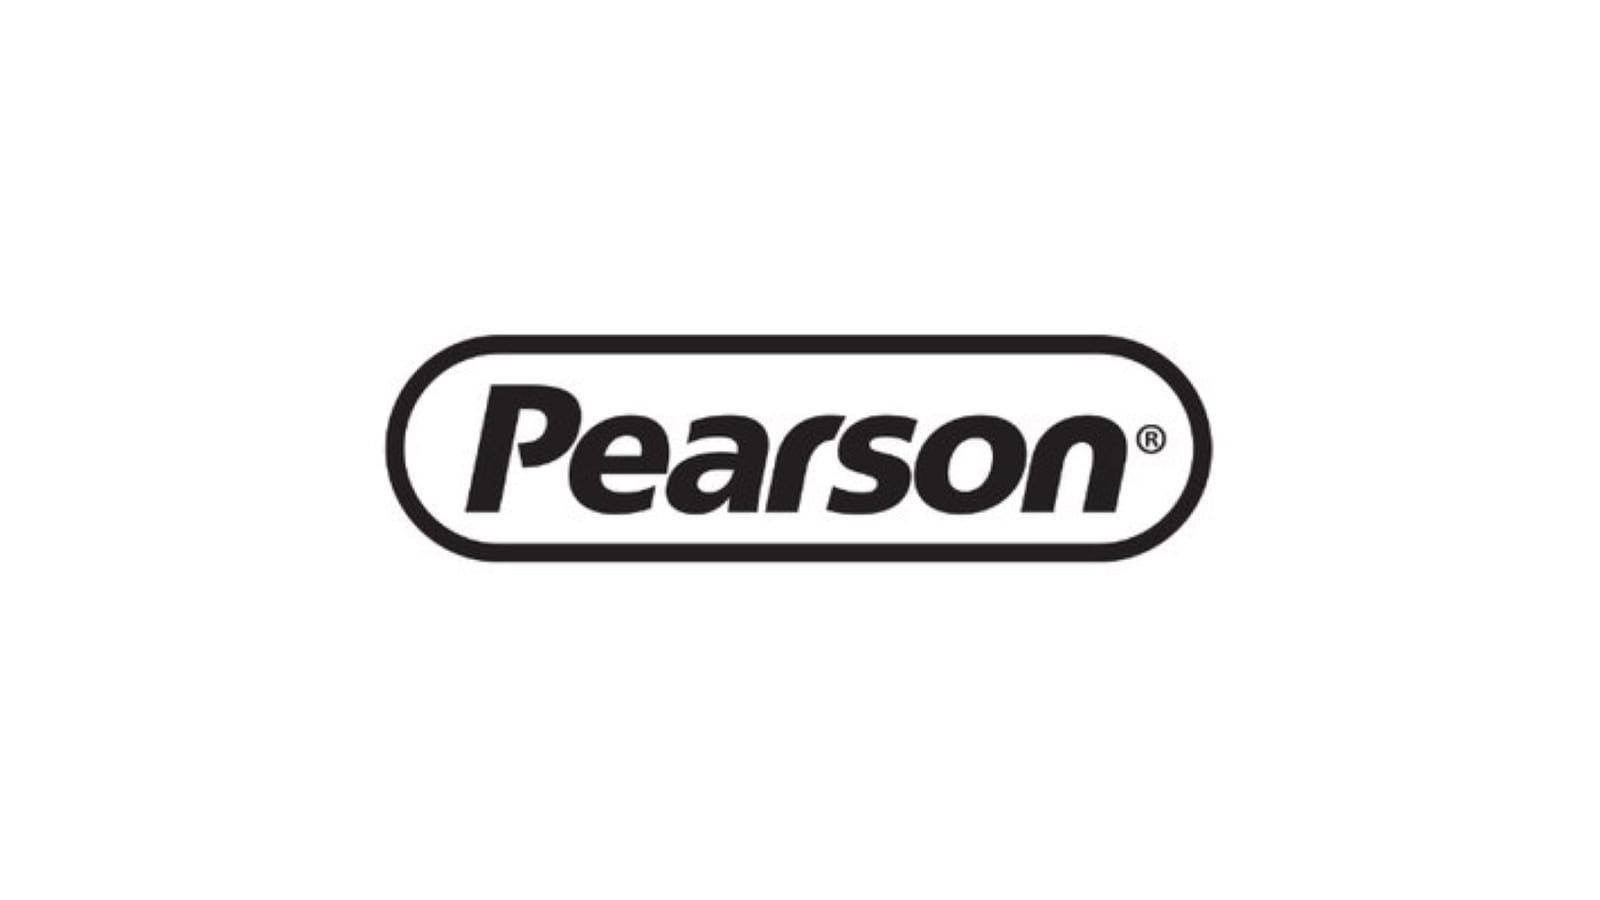 Pearson dental supply company